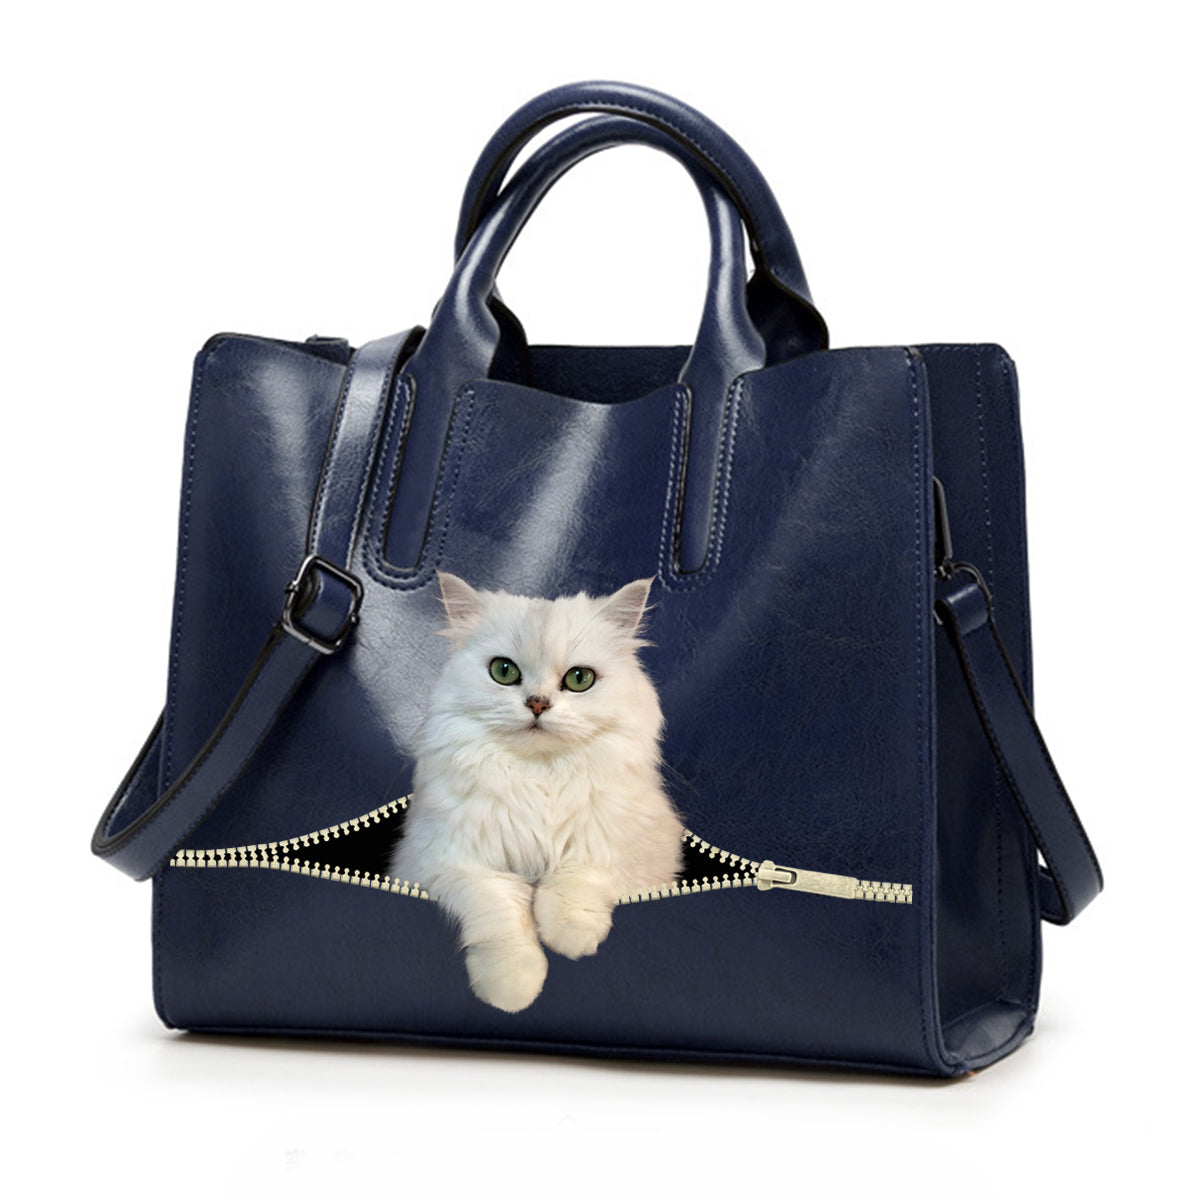 Reduzieren Sie Stress bei der Arbeit mit der persischen Chinchilla-Katze – Luxus-Handtasche V1